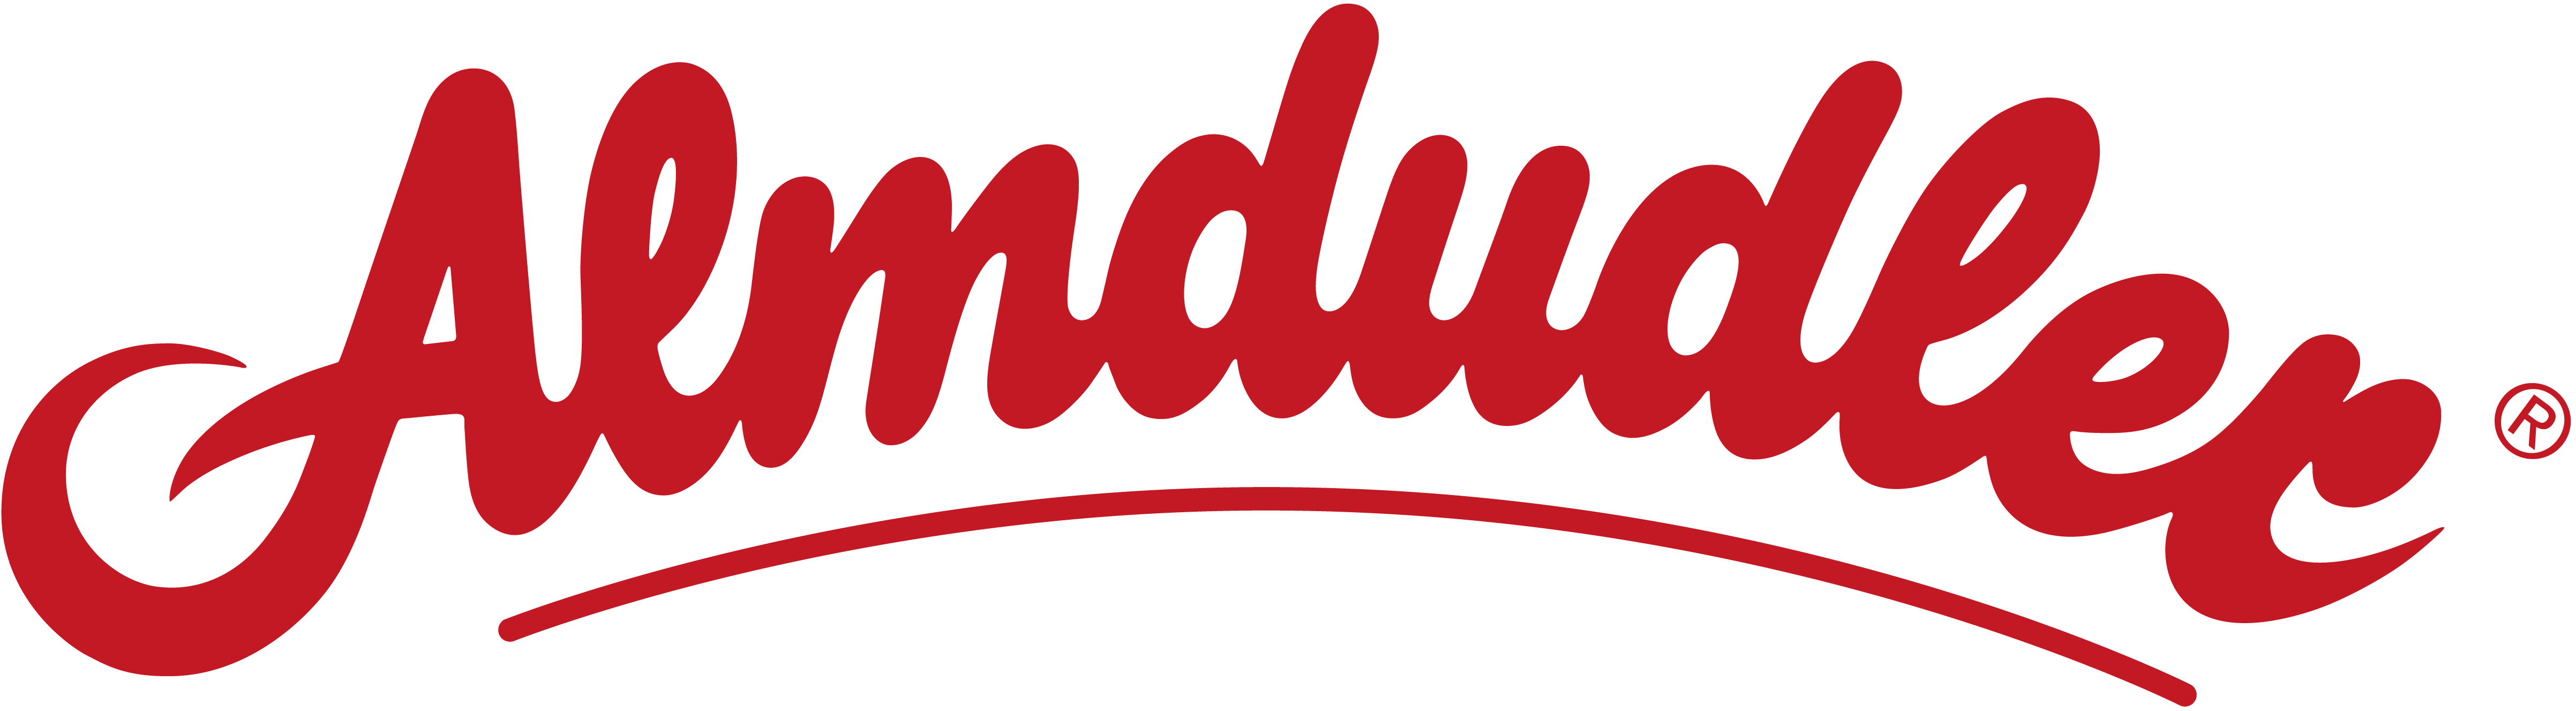 Logo von Almdudler